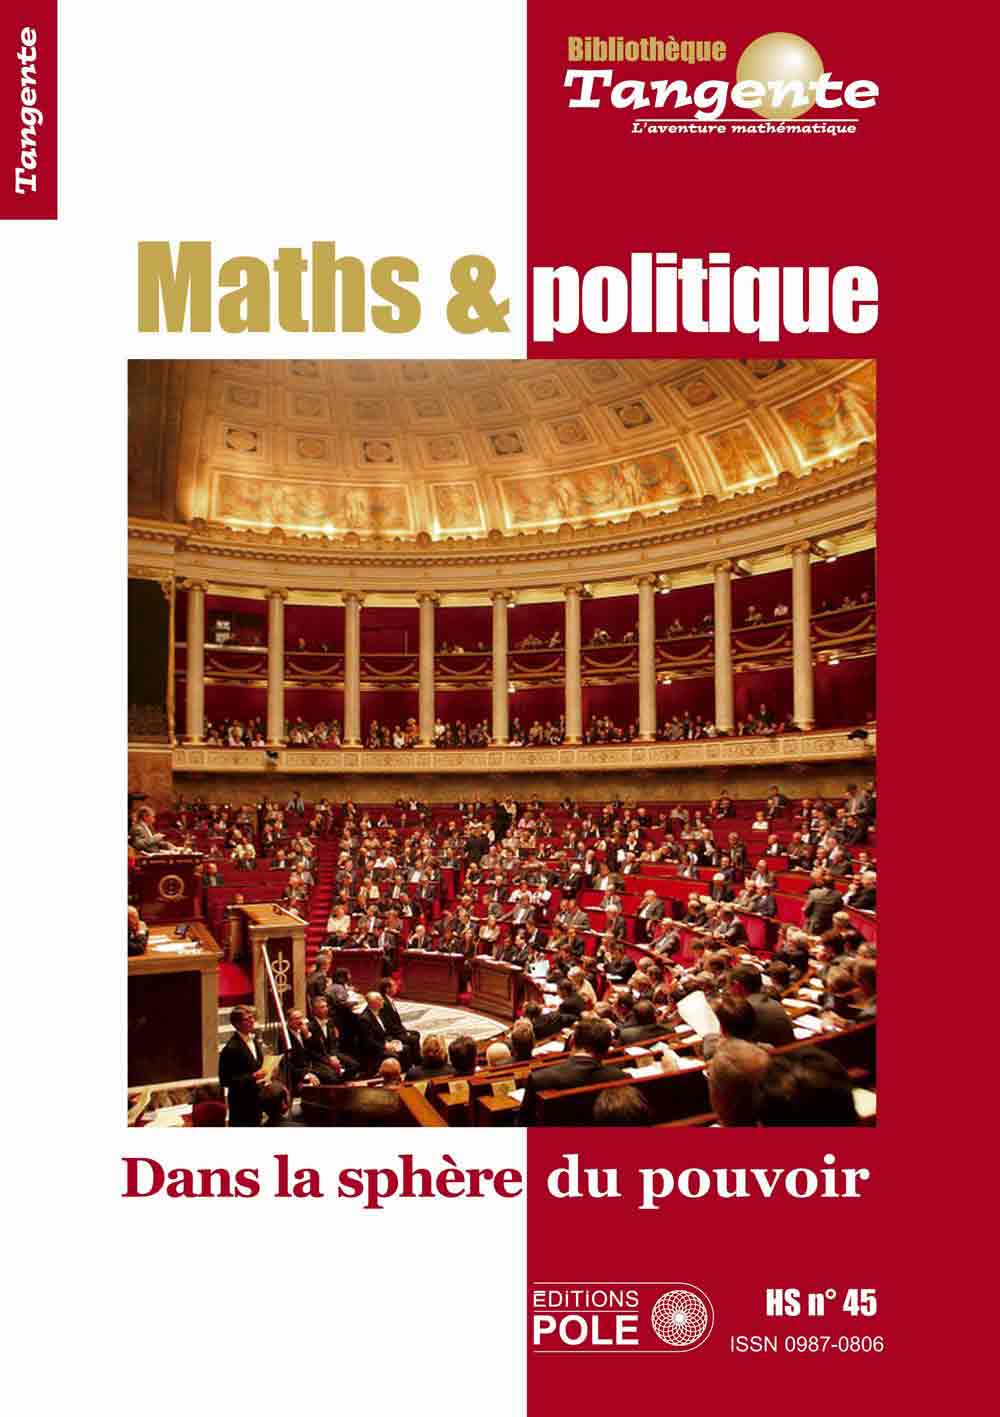 image Bib 45 - Maths et politique